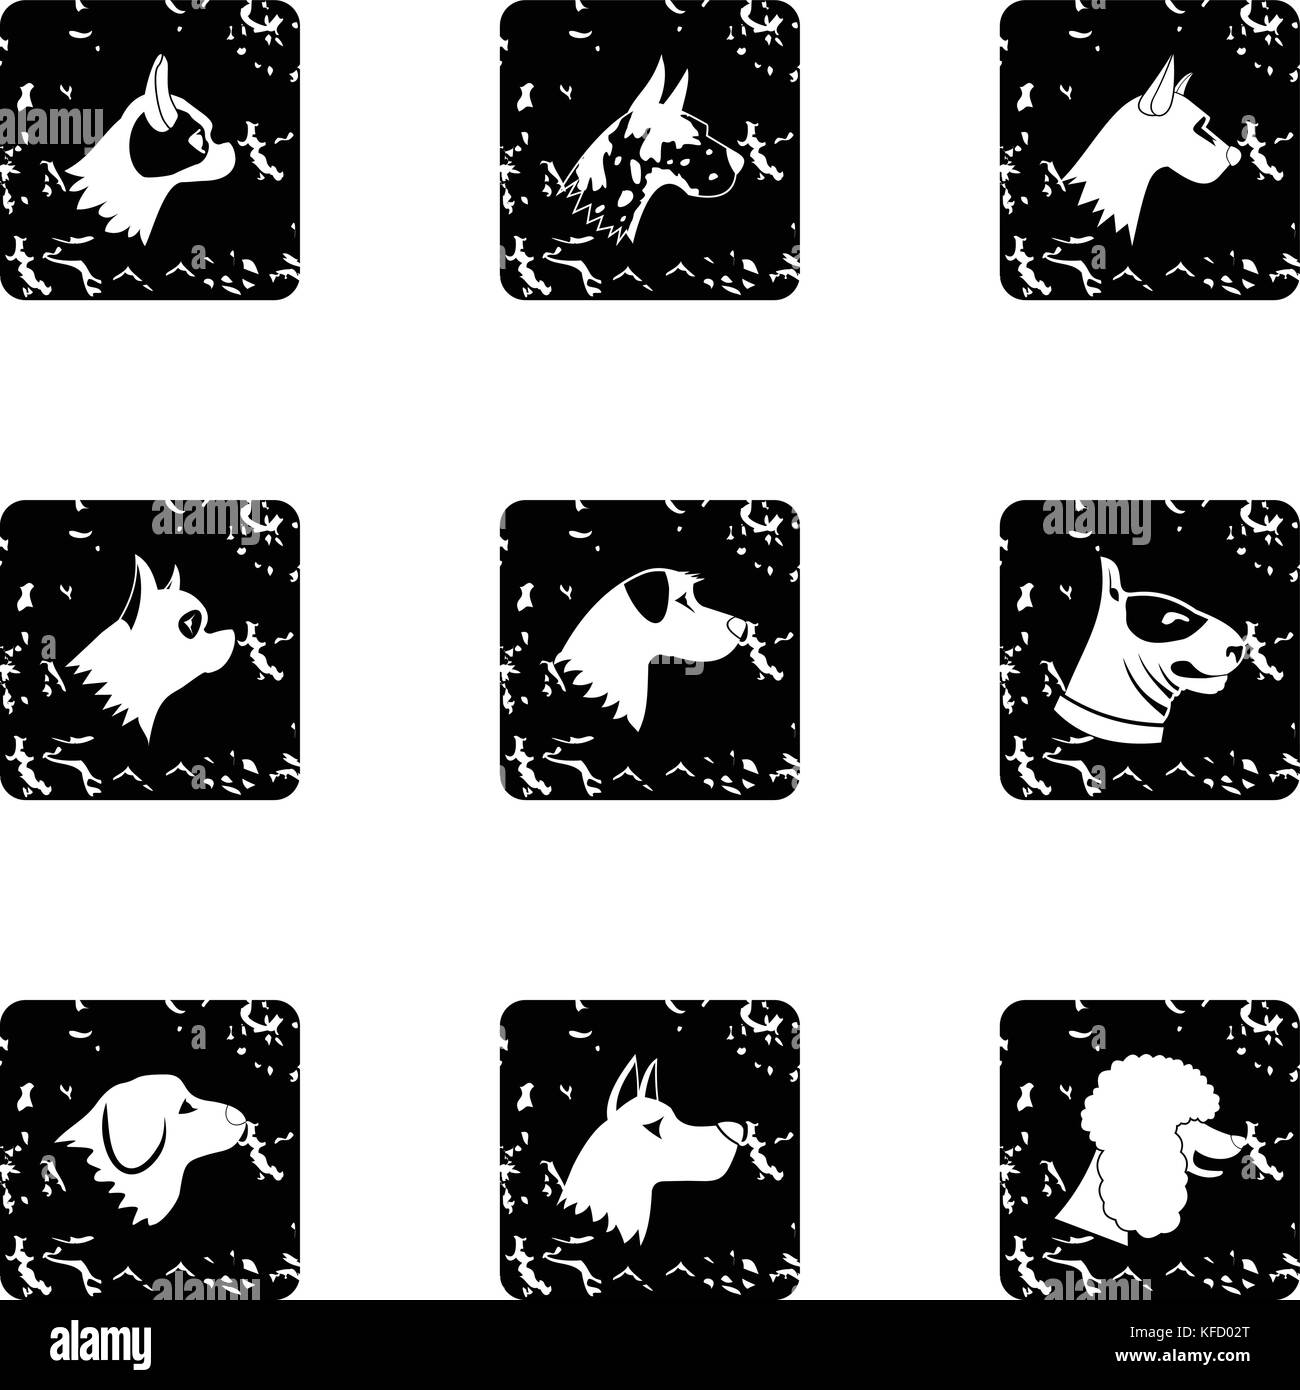 Faithful friend dog icons set, grunge style Stock Vector